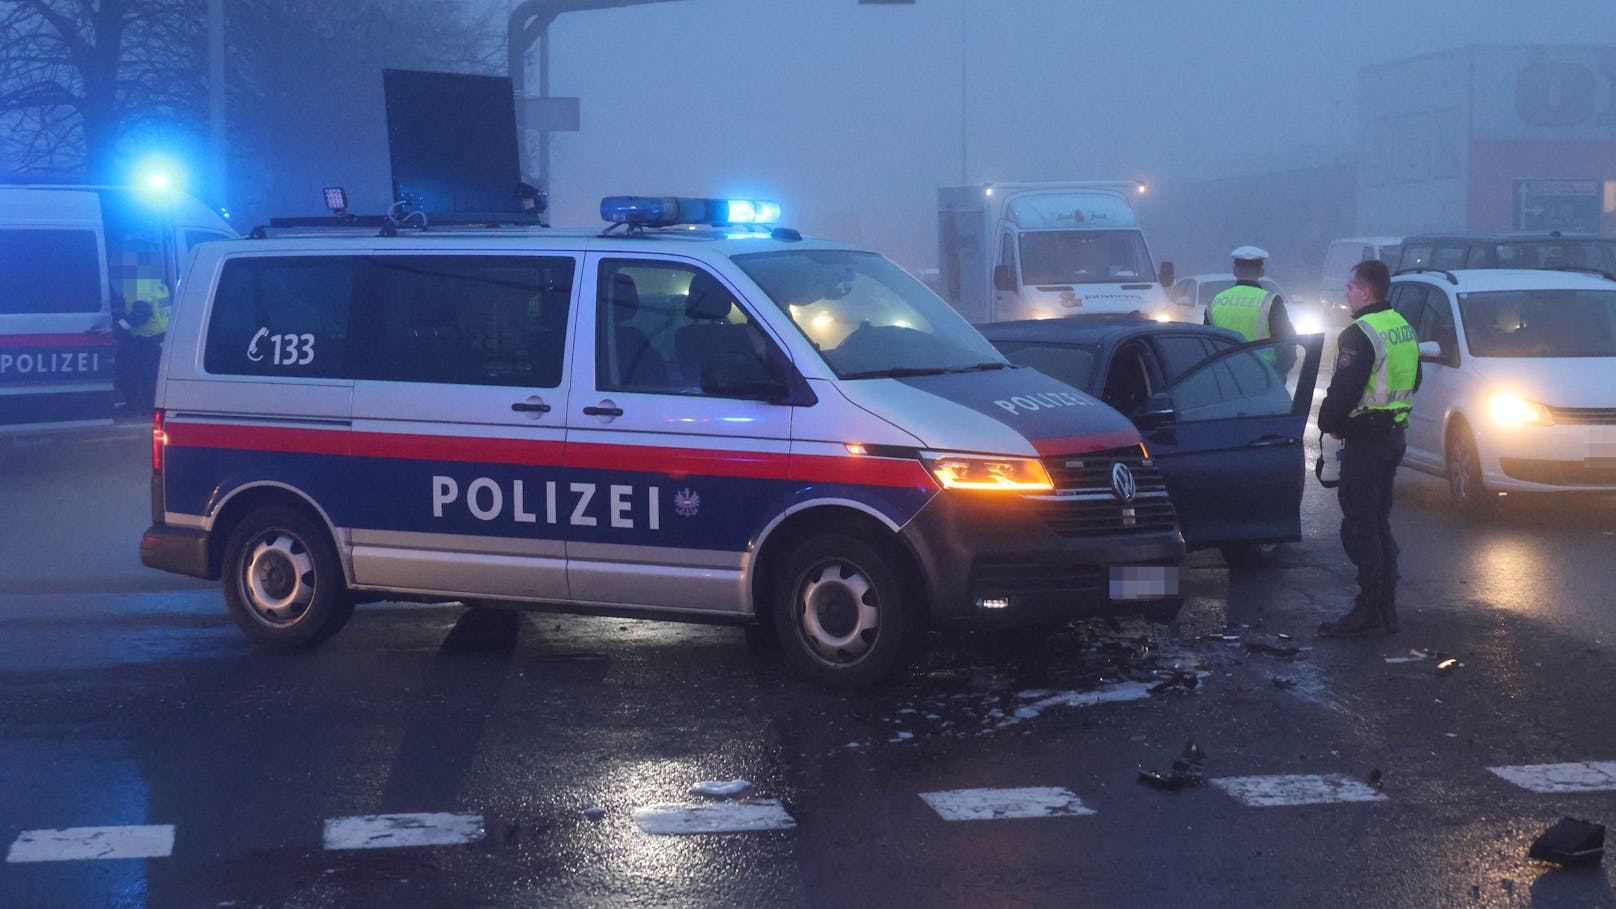 Eine verletzte Person forderte Montagfrüh eine Kollision zwischen einem Auto und einem Polizeifahrzeug auf der B137 Innviertler Straße in Wels-Neustadt.